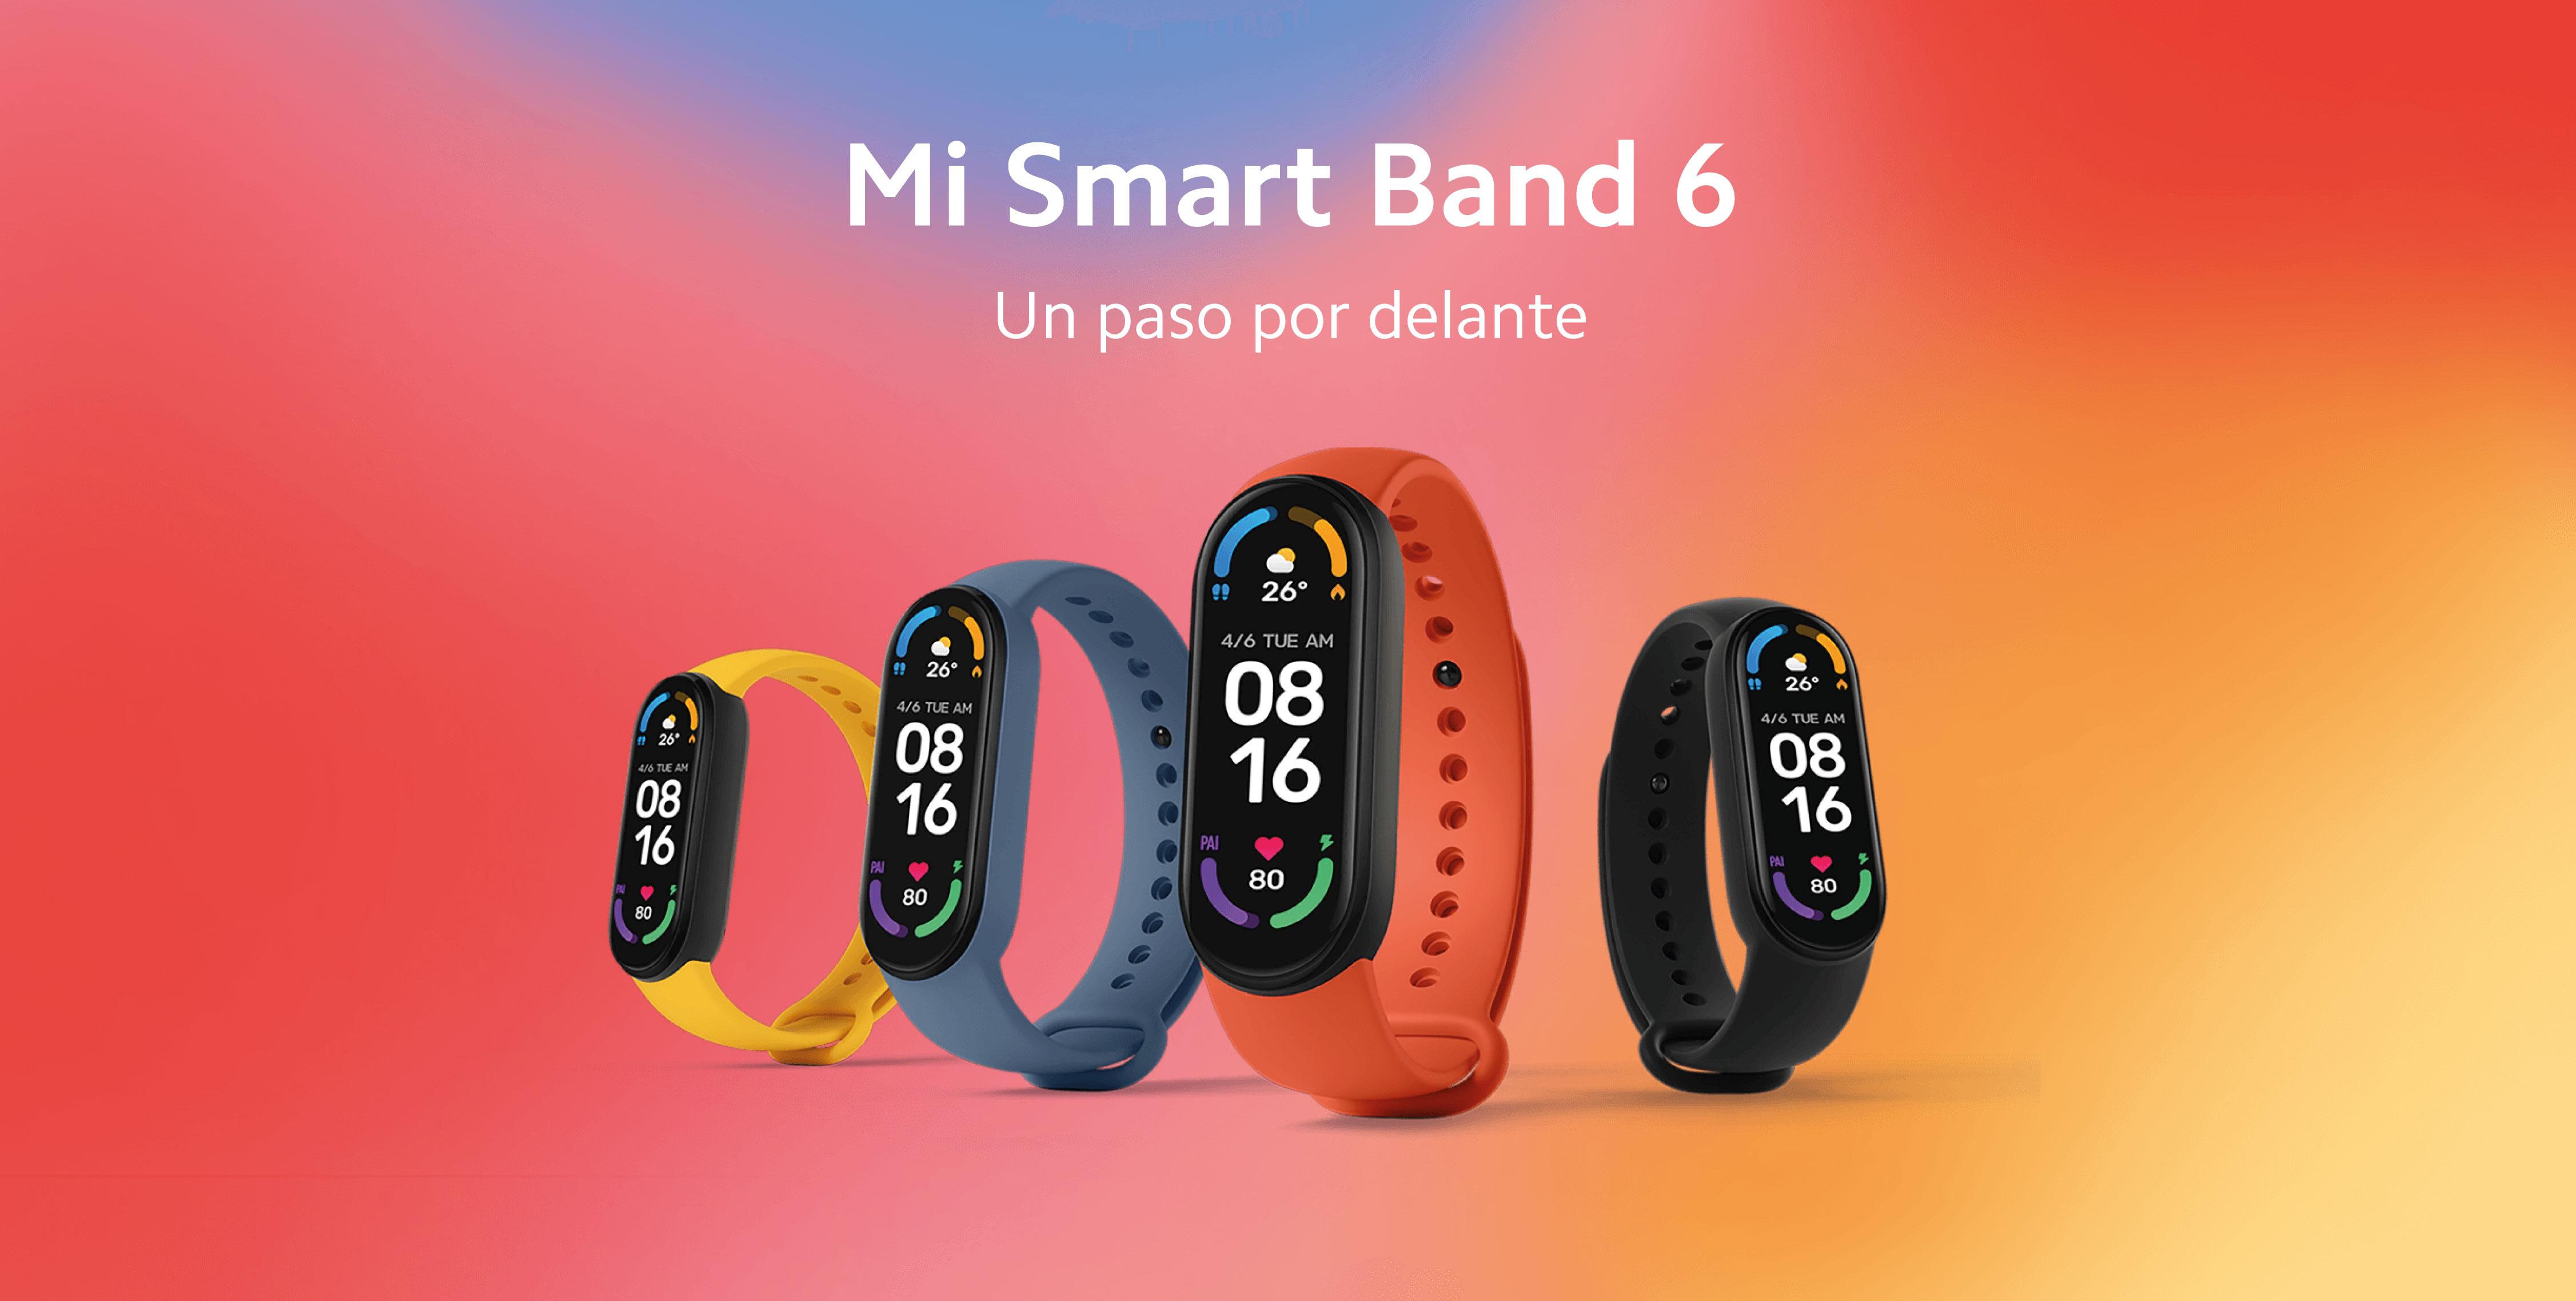 Xiaomi Mi Smart Band 6: Características y Precio